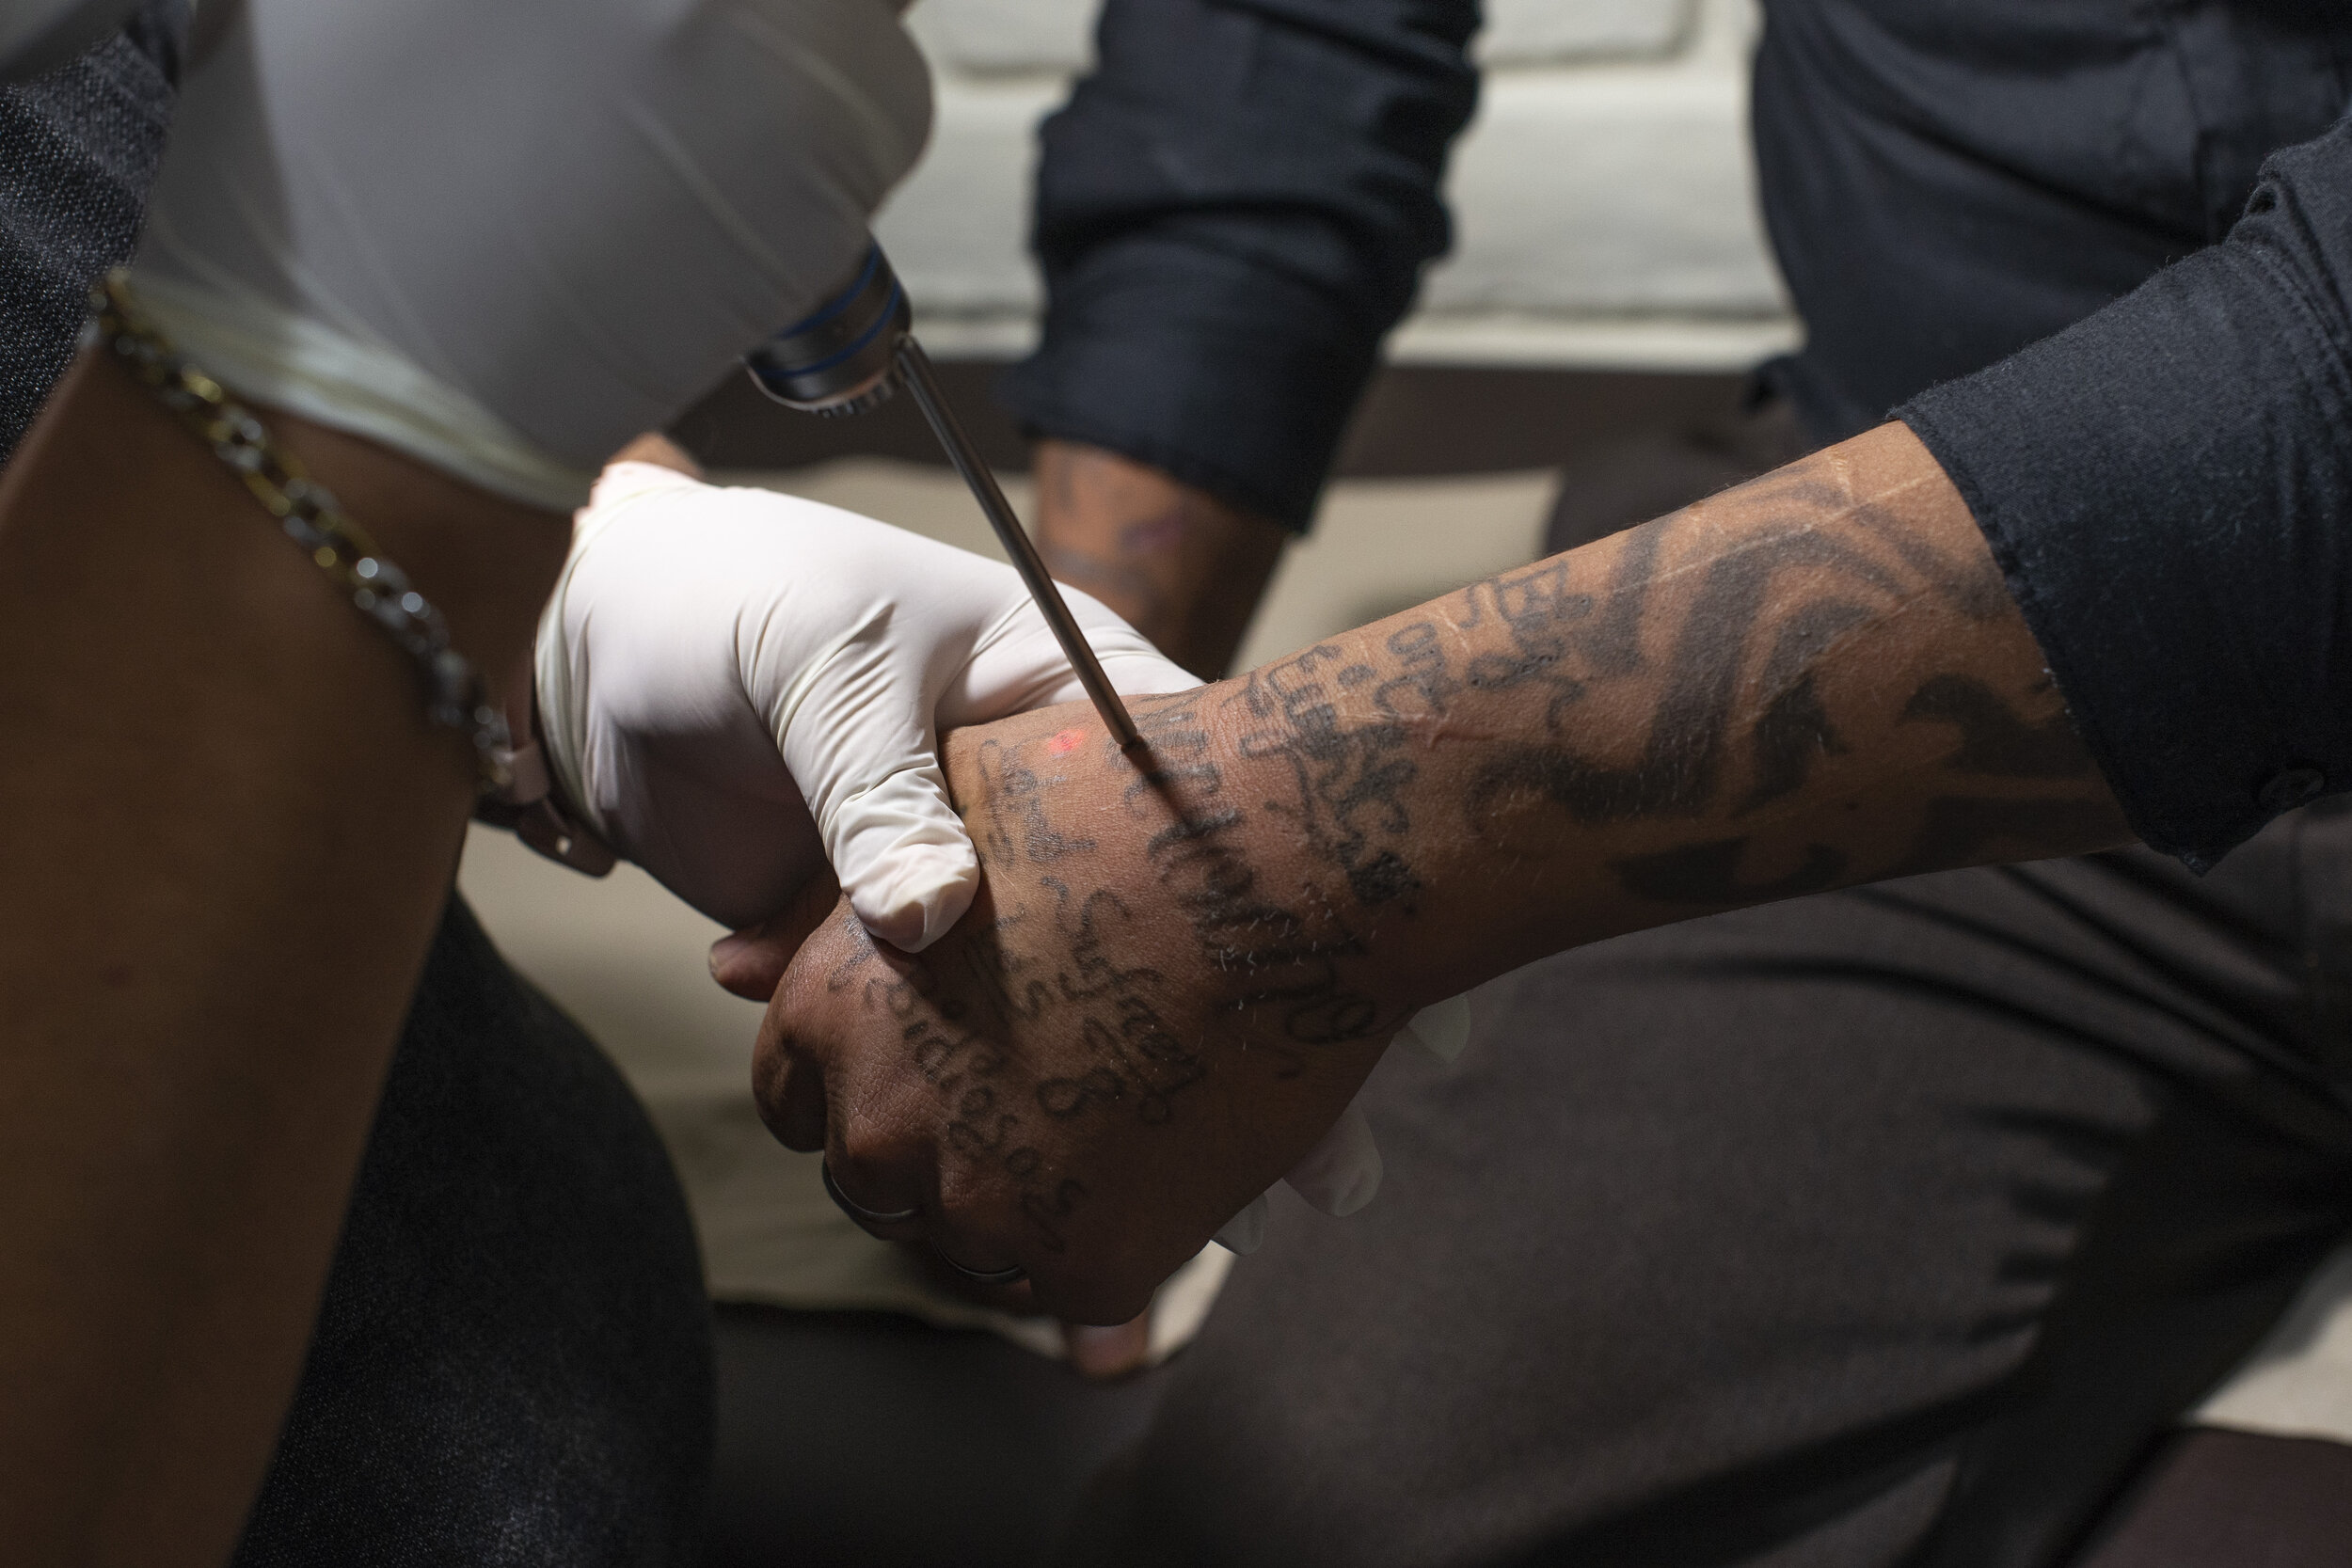  Melvin Eduardo Martinez Melara receiving a tattoo removal treatment.  